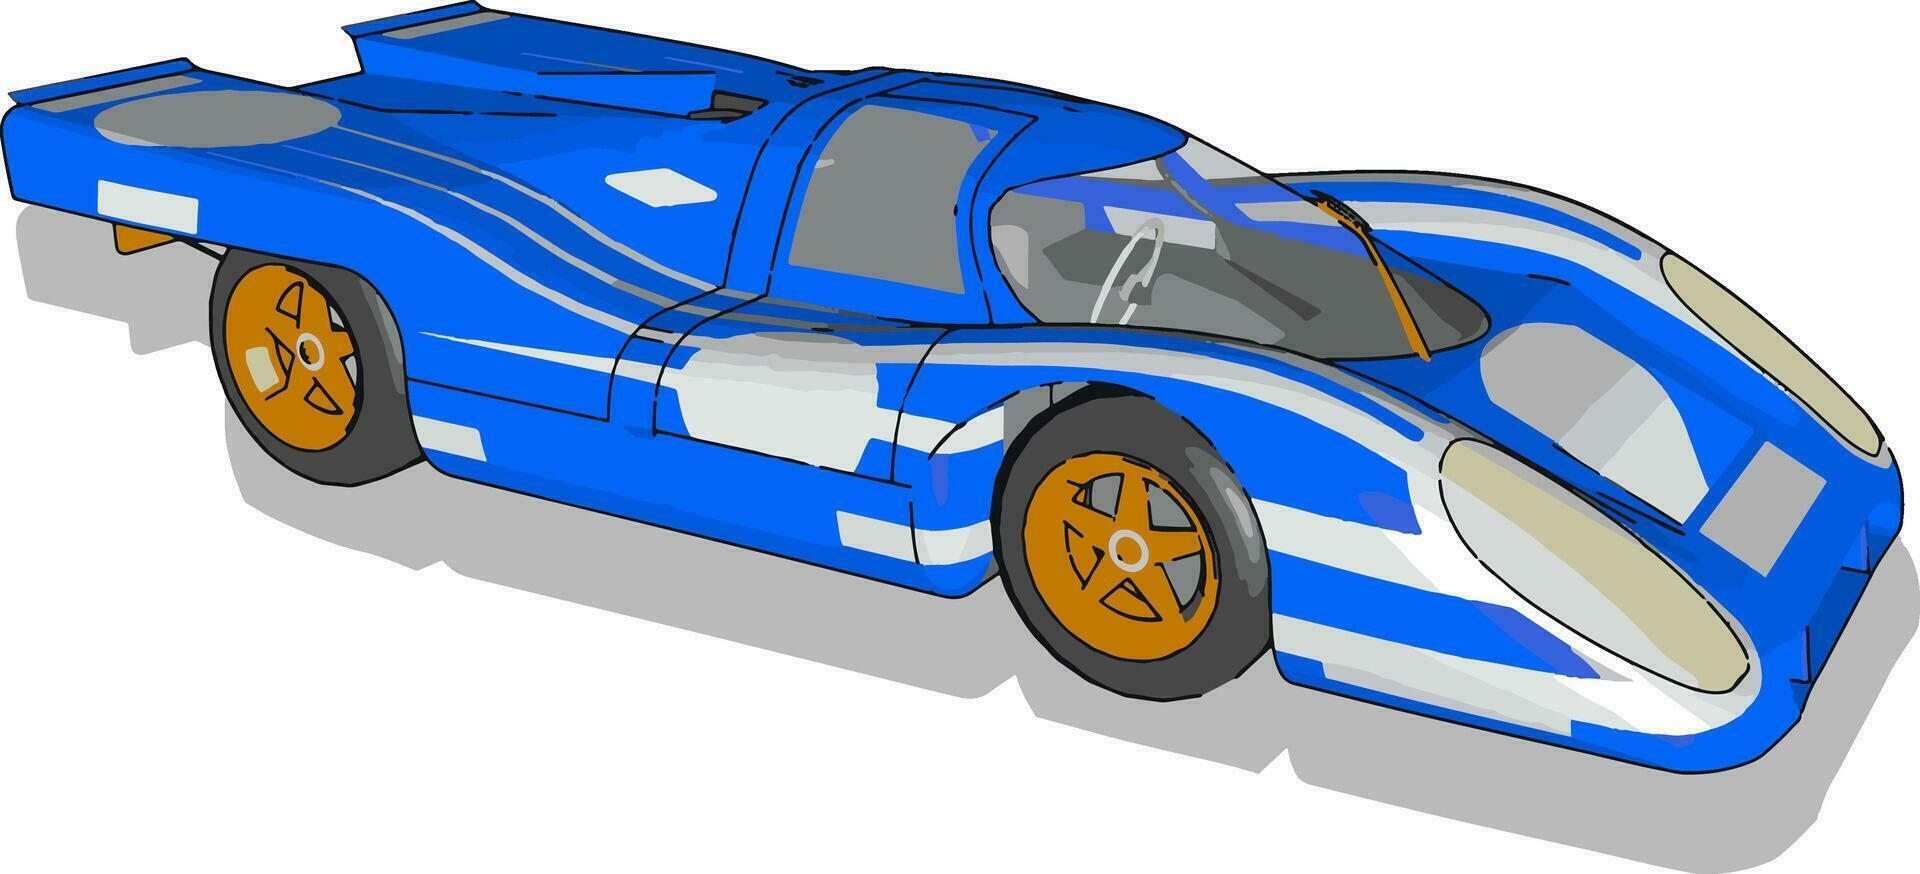 coche de carreras azul, ilustración, vector sobre fondo blanco.